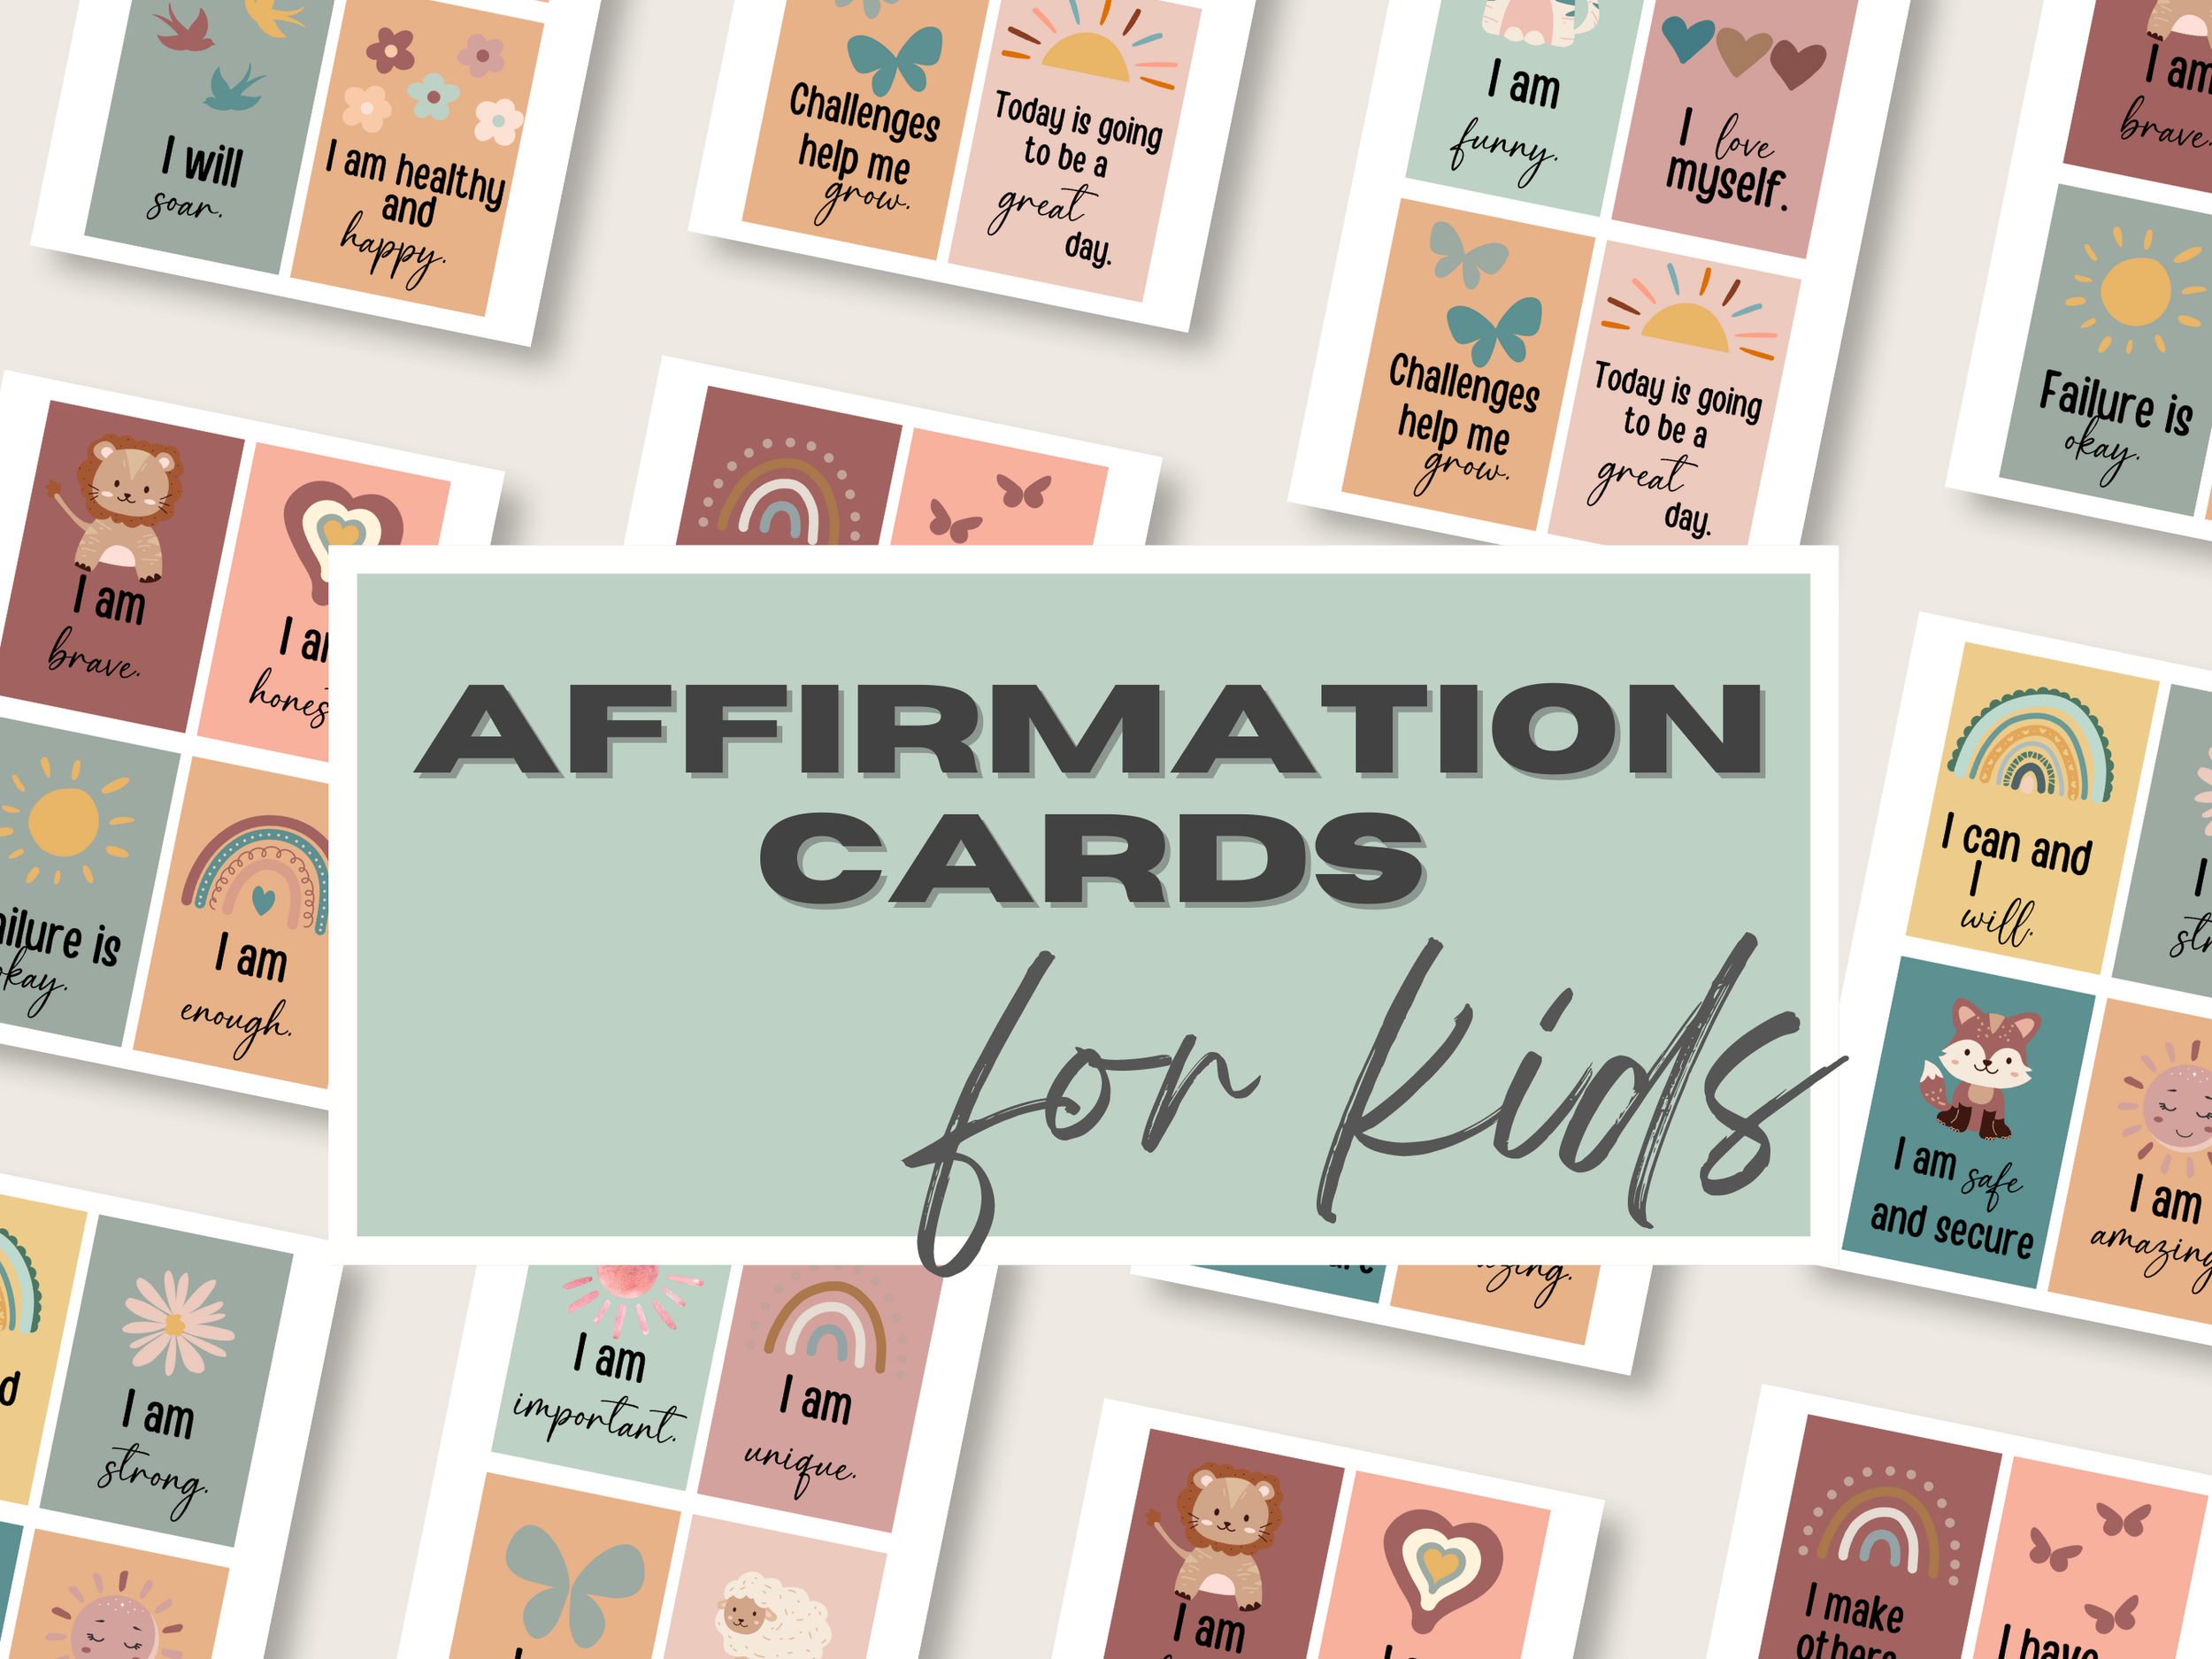 Affirmation Cards for Kids